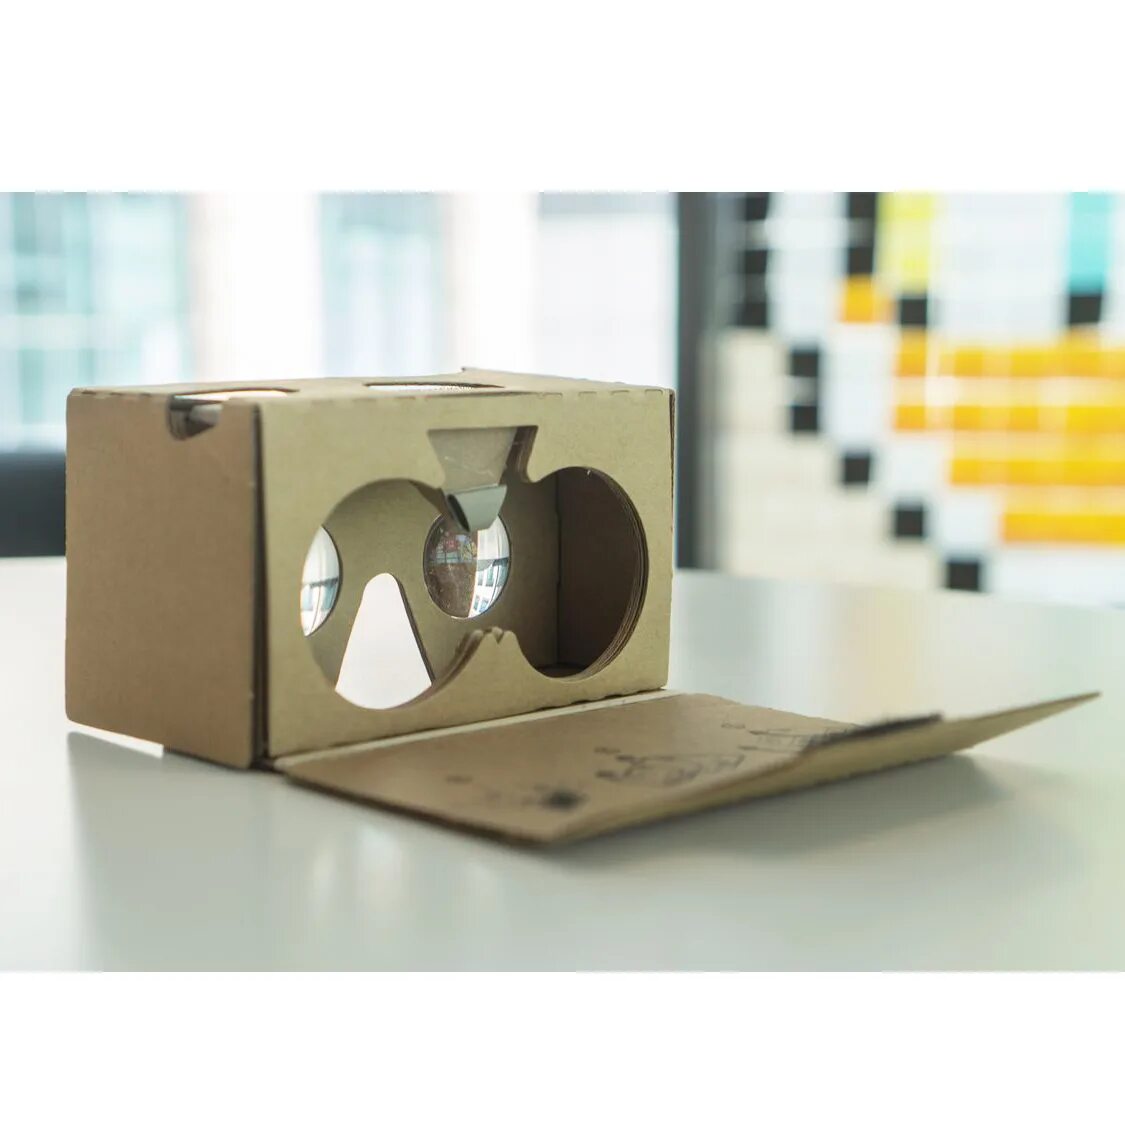 Qr vr очков. Google VR очки. Картонные очки виртуальной реальности. Виртуальные очки Google Cardboard. Упаковка для очков из картона.